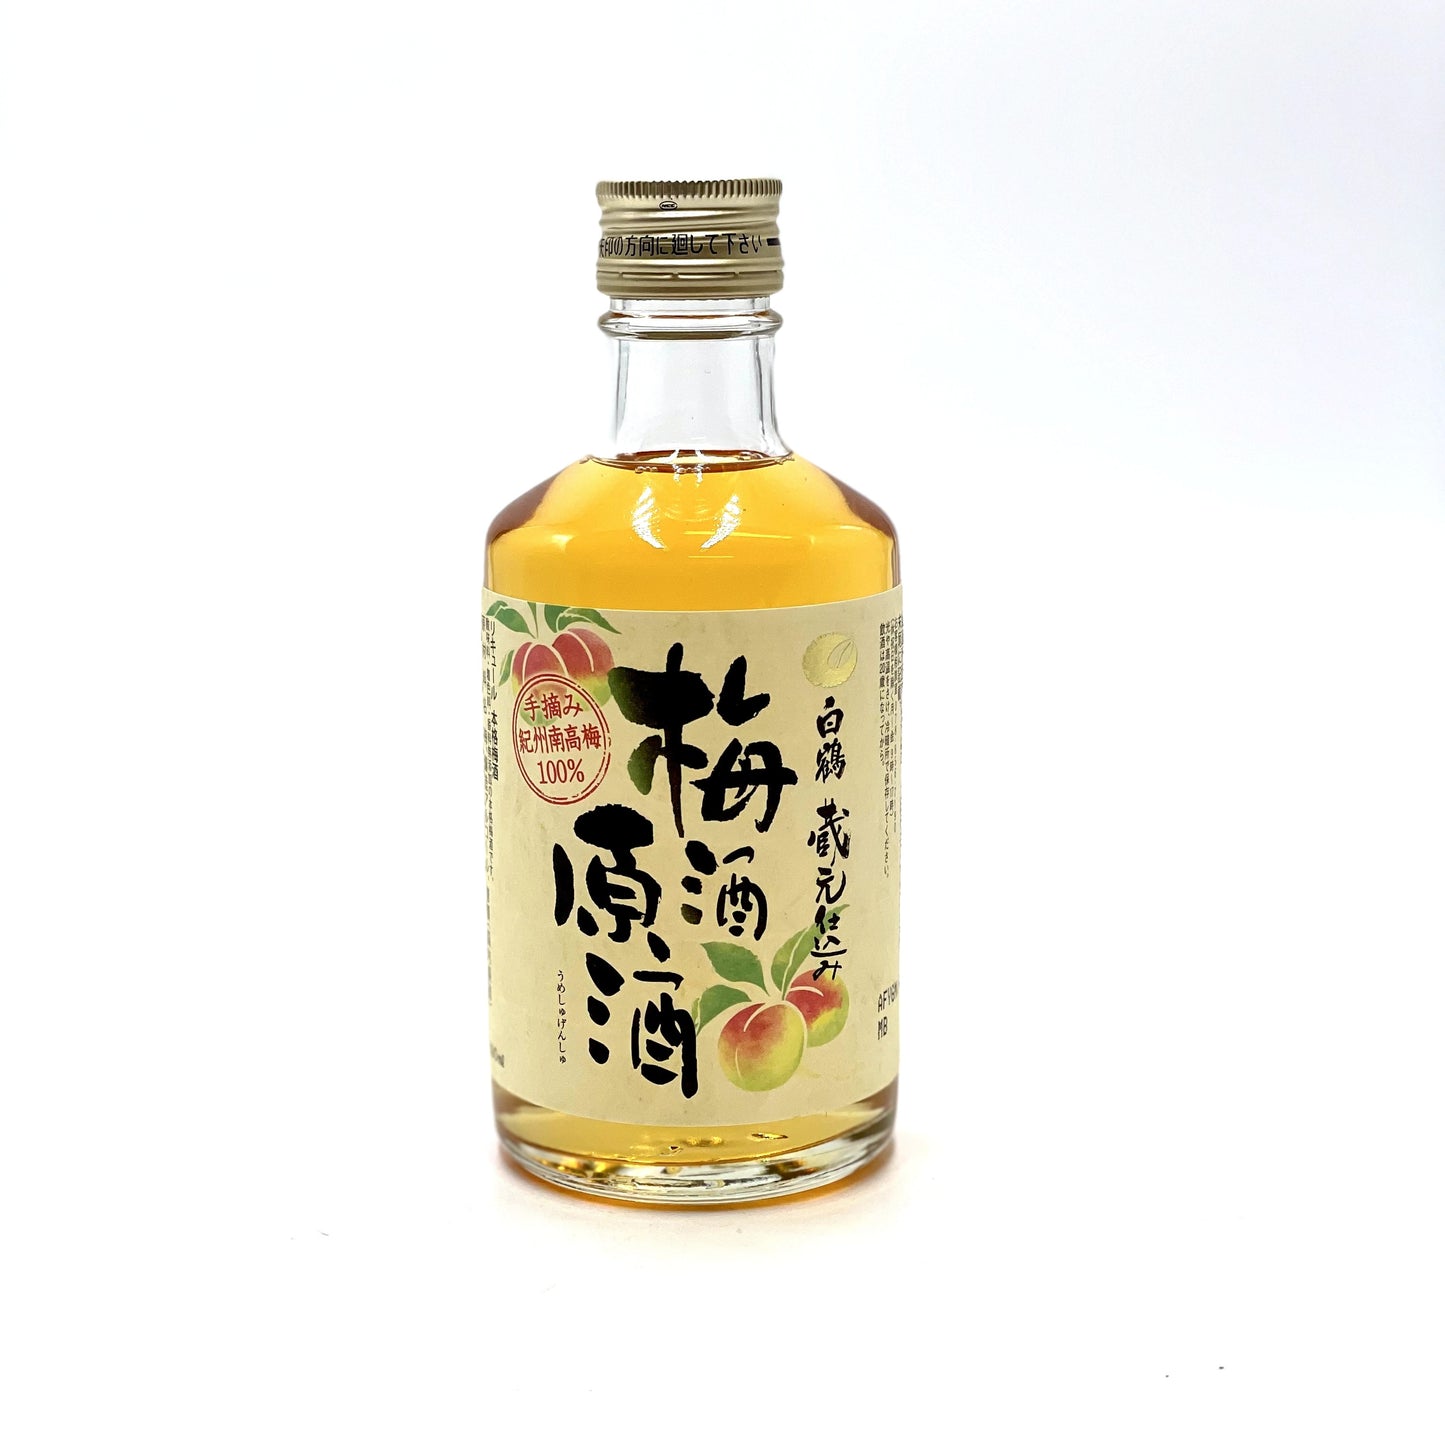 Hakutsuru Umeshu Genshu alc 19.5% 300ml 白鶴梅酒原酒